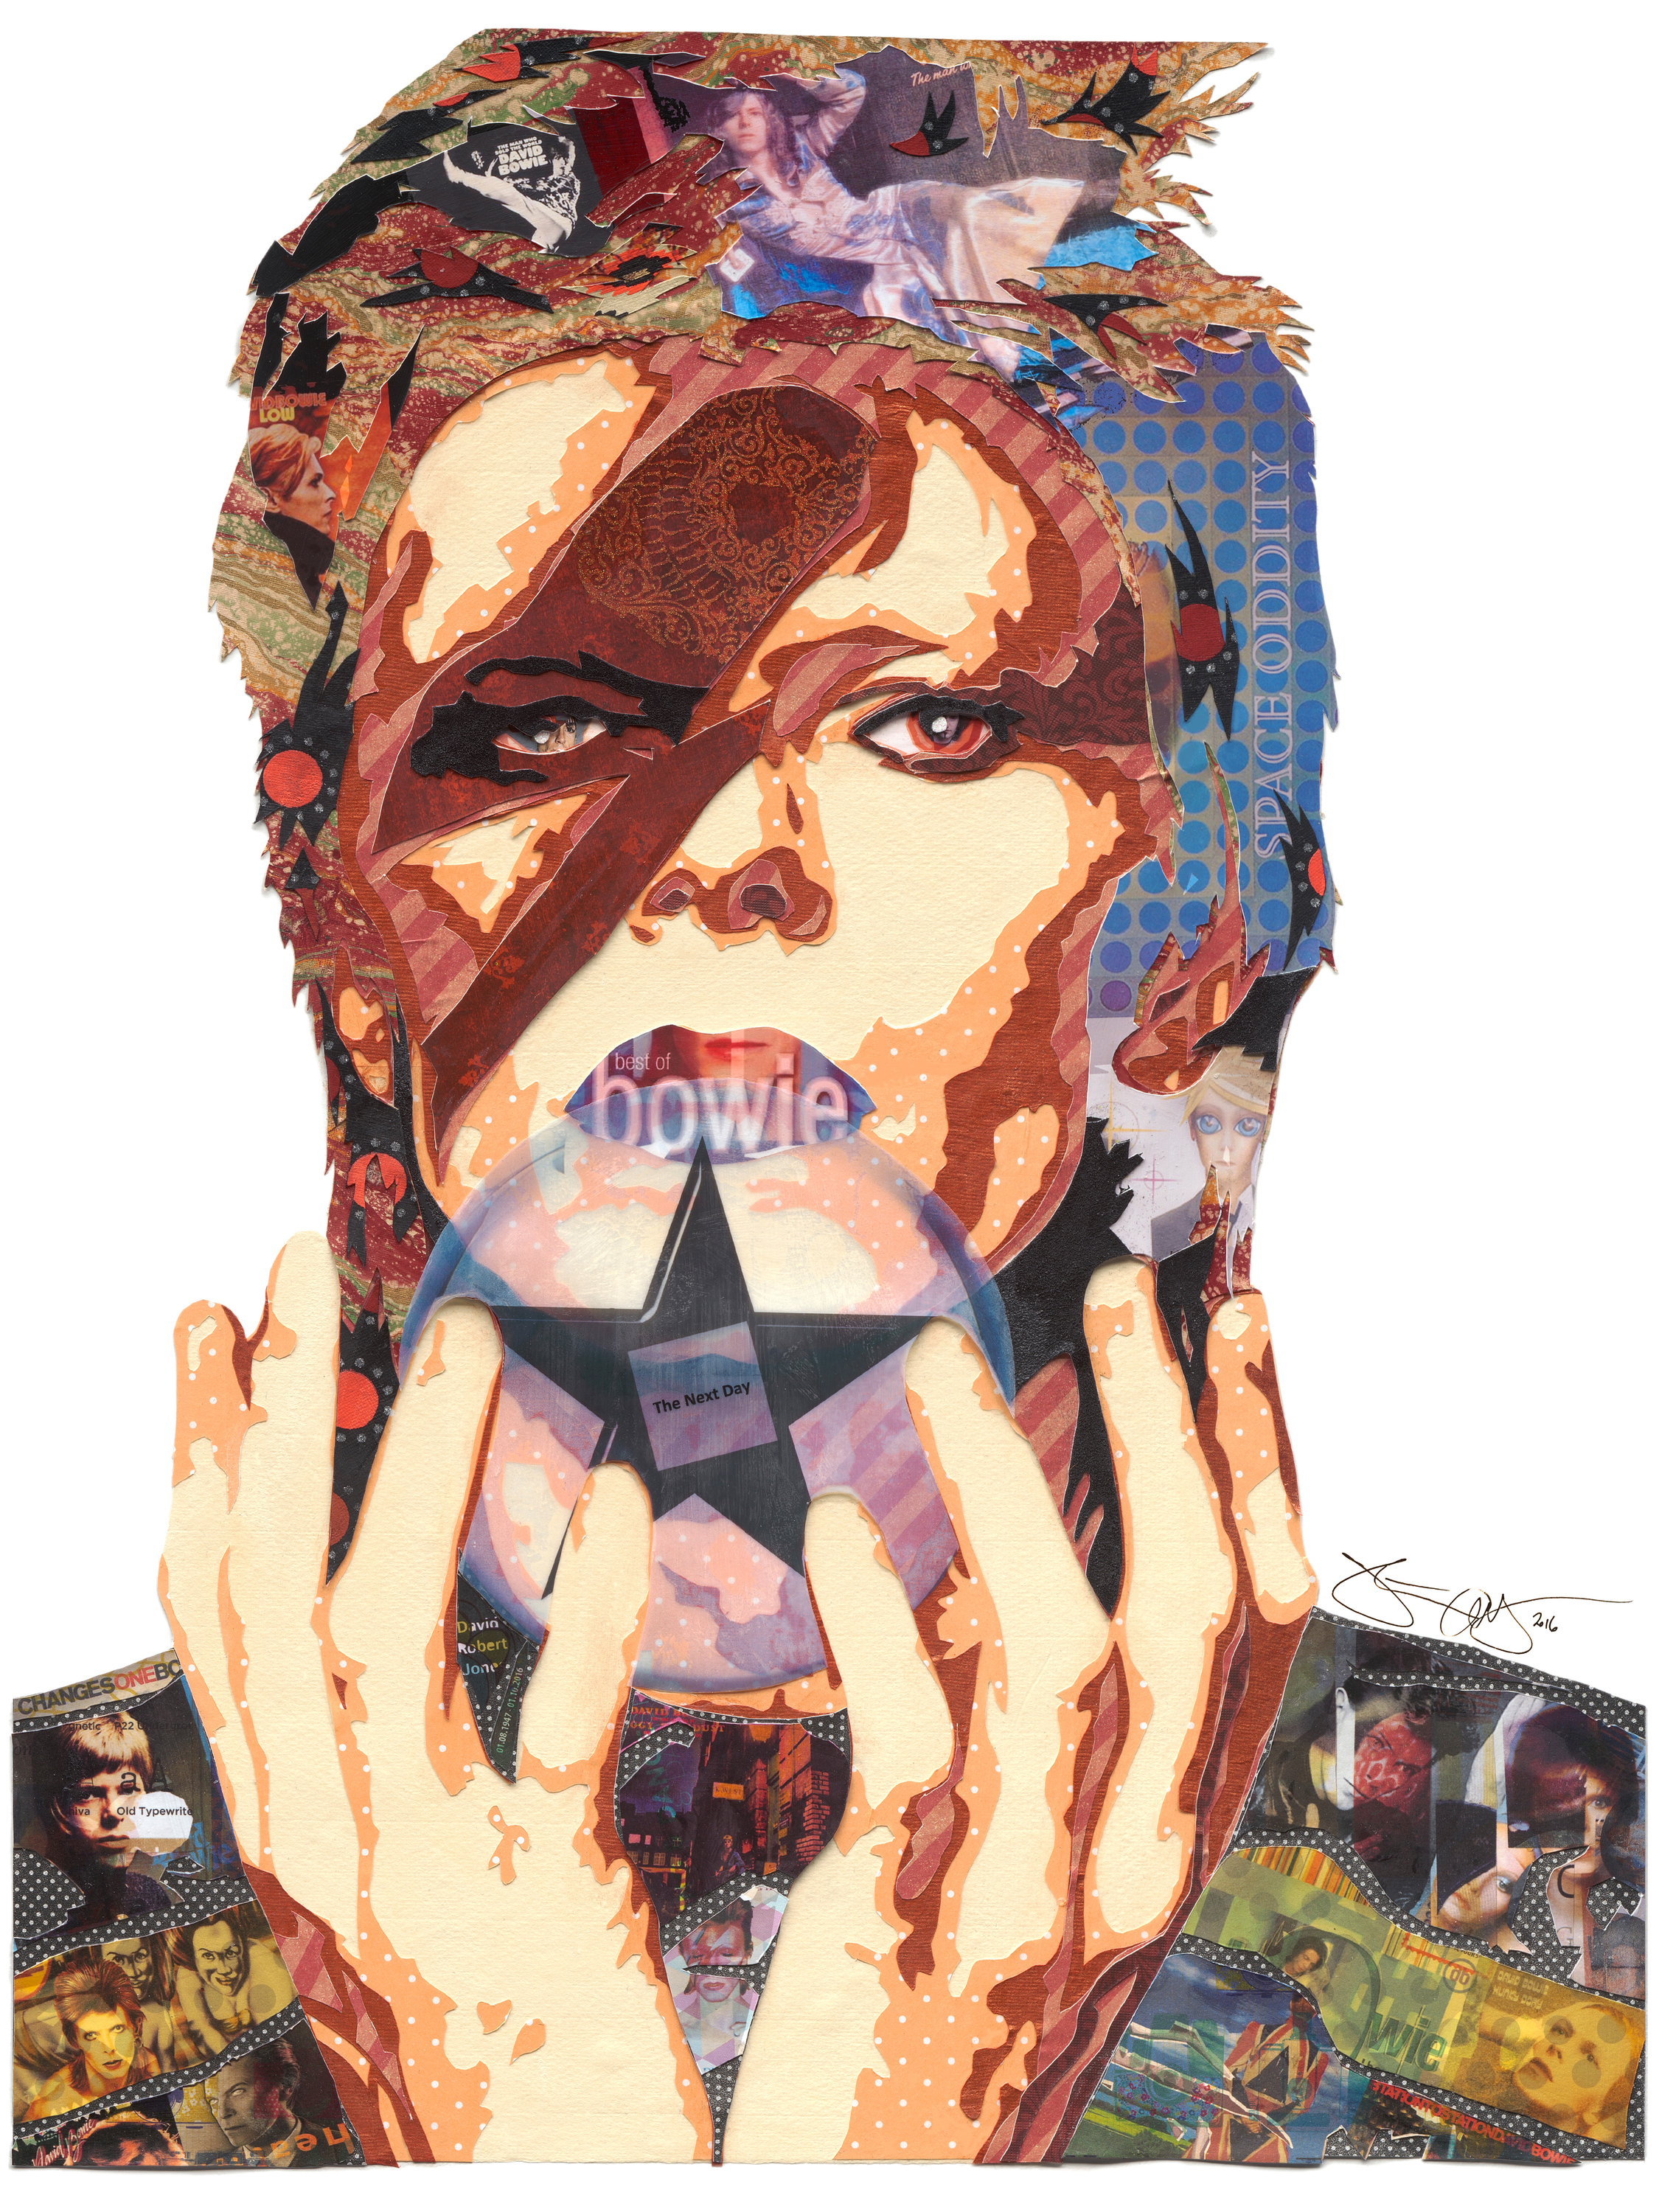 Bowie i 12x16 signature 2016 pgxzat